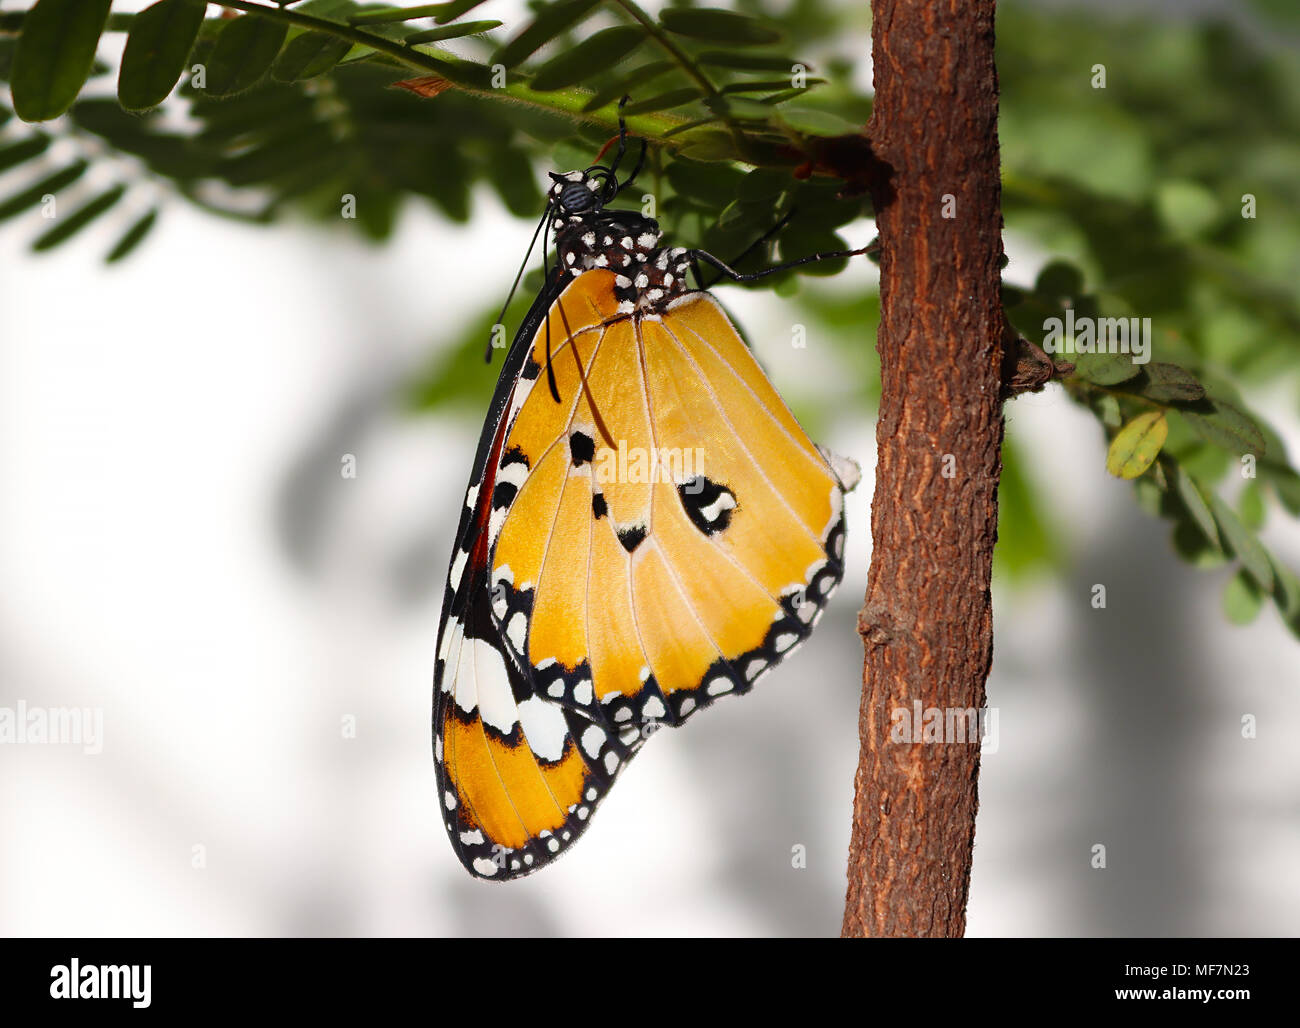 Plain tiger butterfly appena emerso dalla sua pupa e pronto a volare Foto Stock